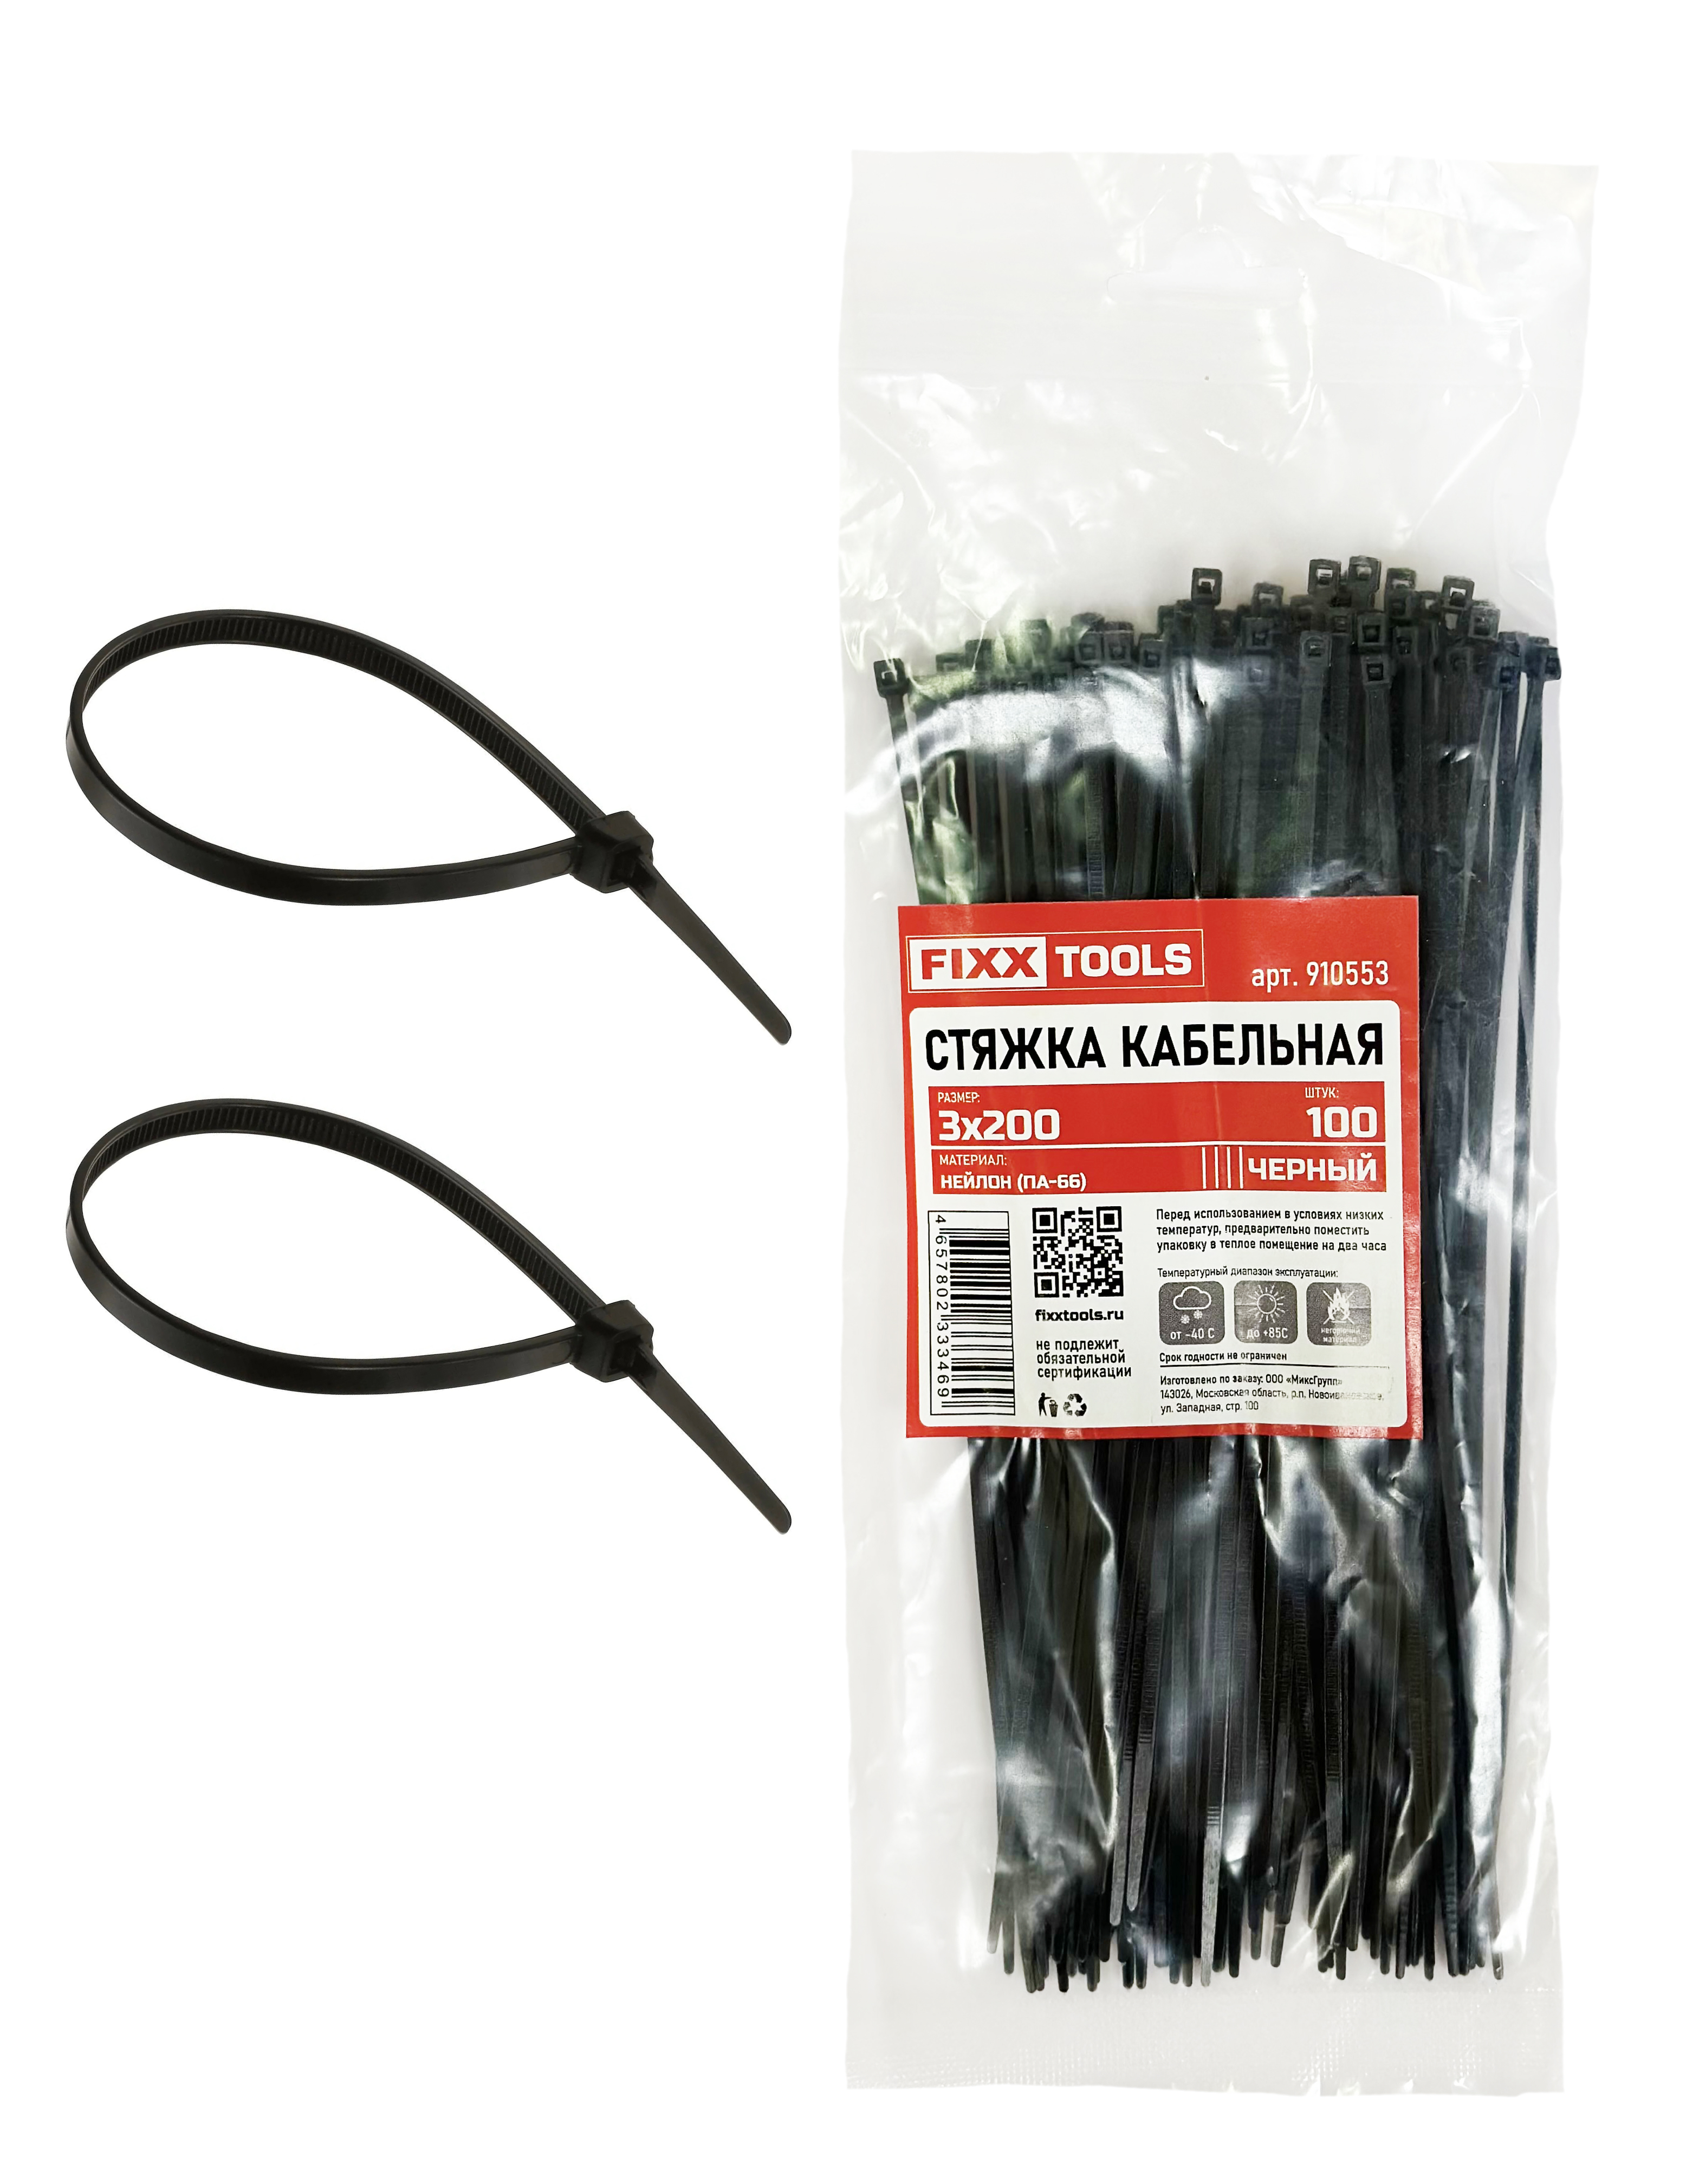 Стяжка кабельная FIXXTOOLS 3х200мм черная упак 100шт 910553 бумага сотовая для упак черная 80г м2 длин 50м шир500